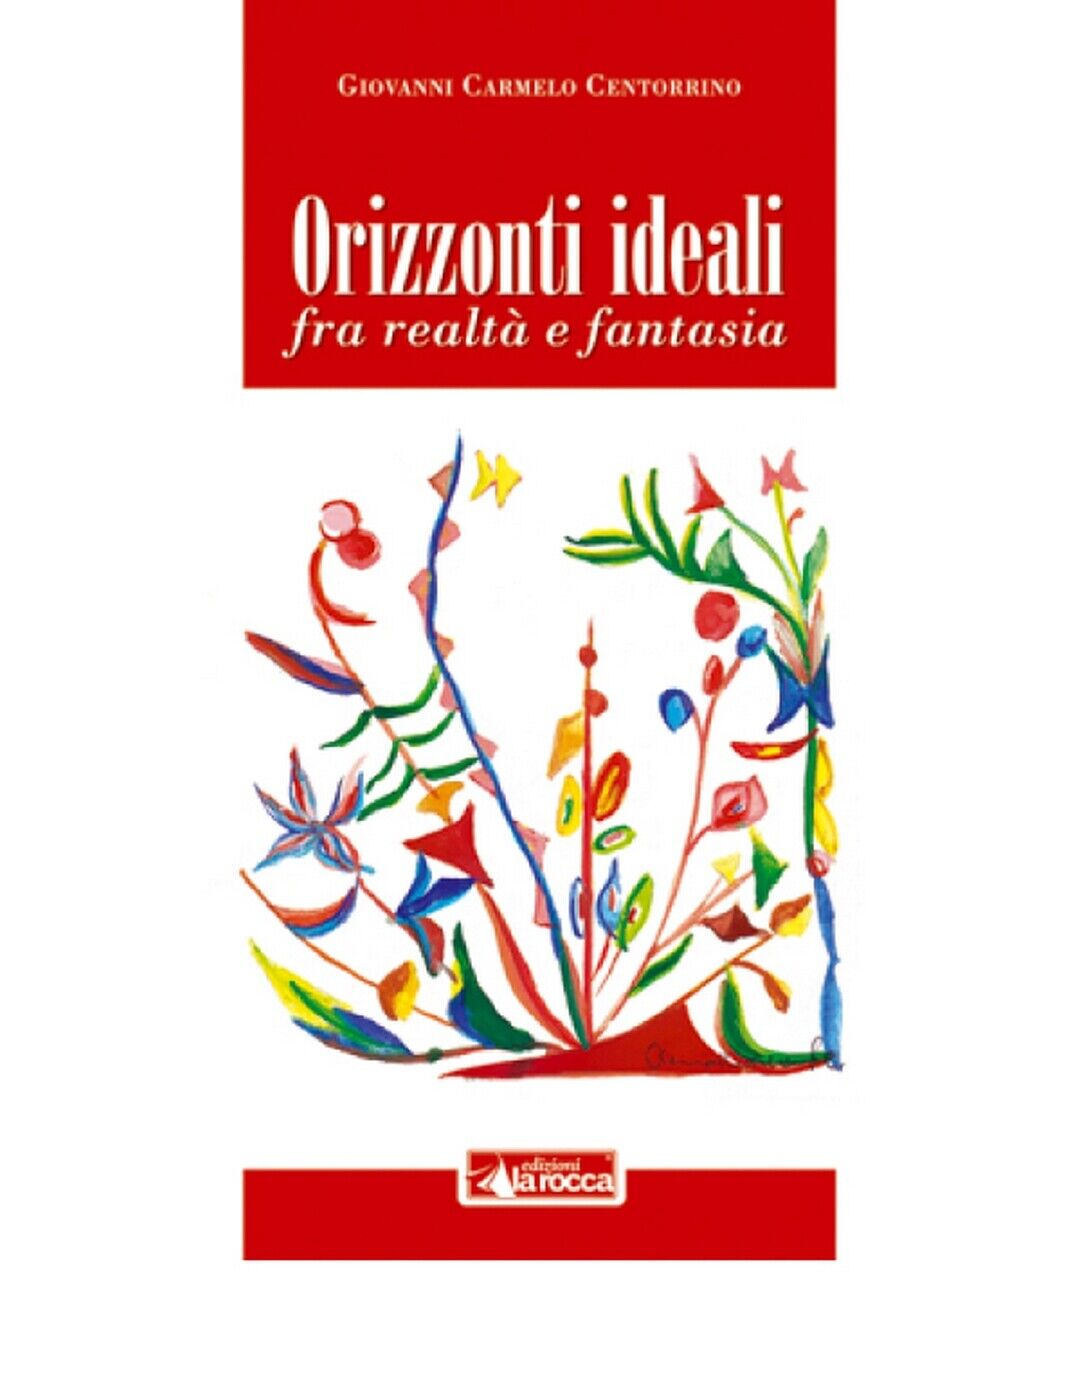 ORIZZONTI IDEALI  di Giovanni Carmelo Centorrino,  2020,  Edizioni La Rocca